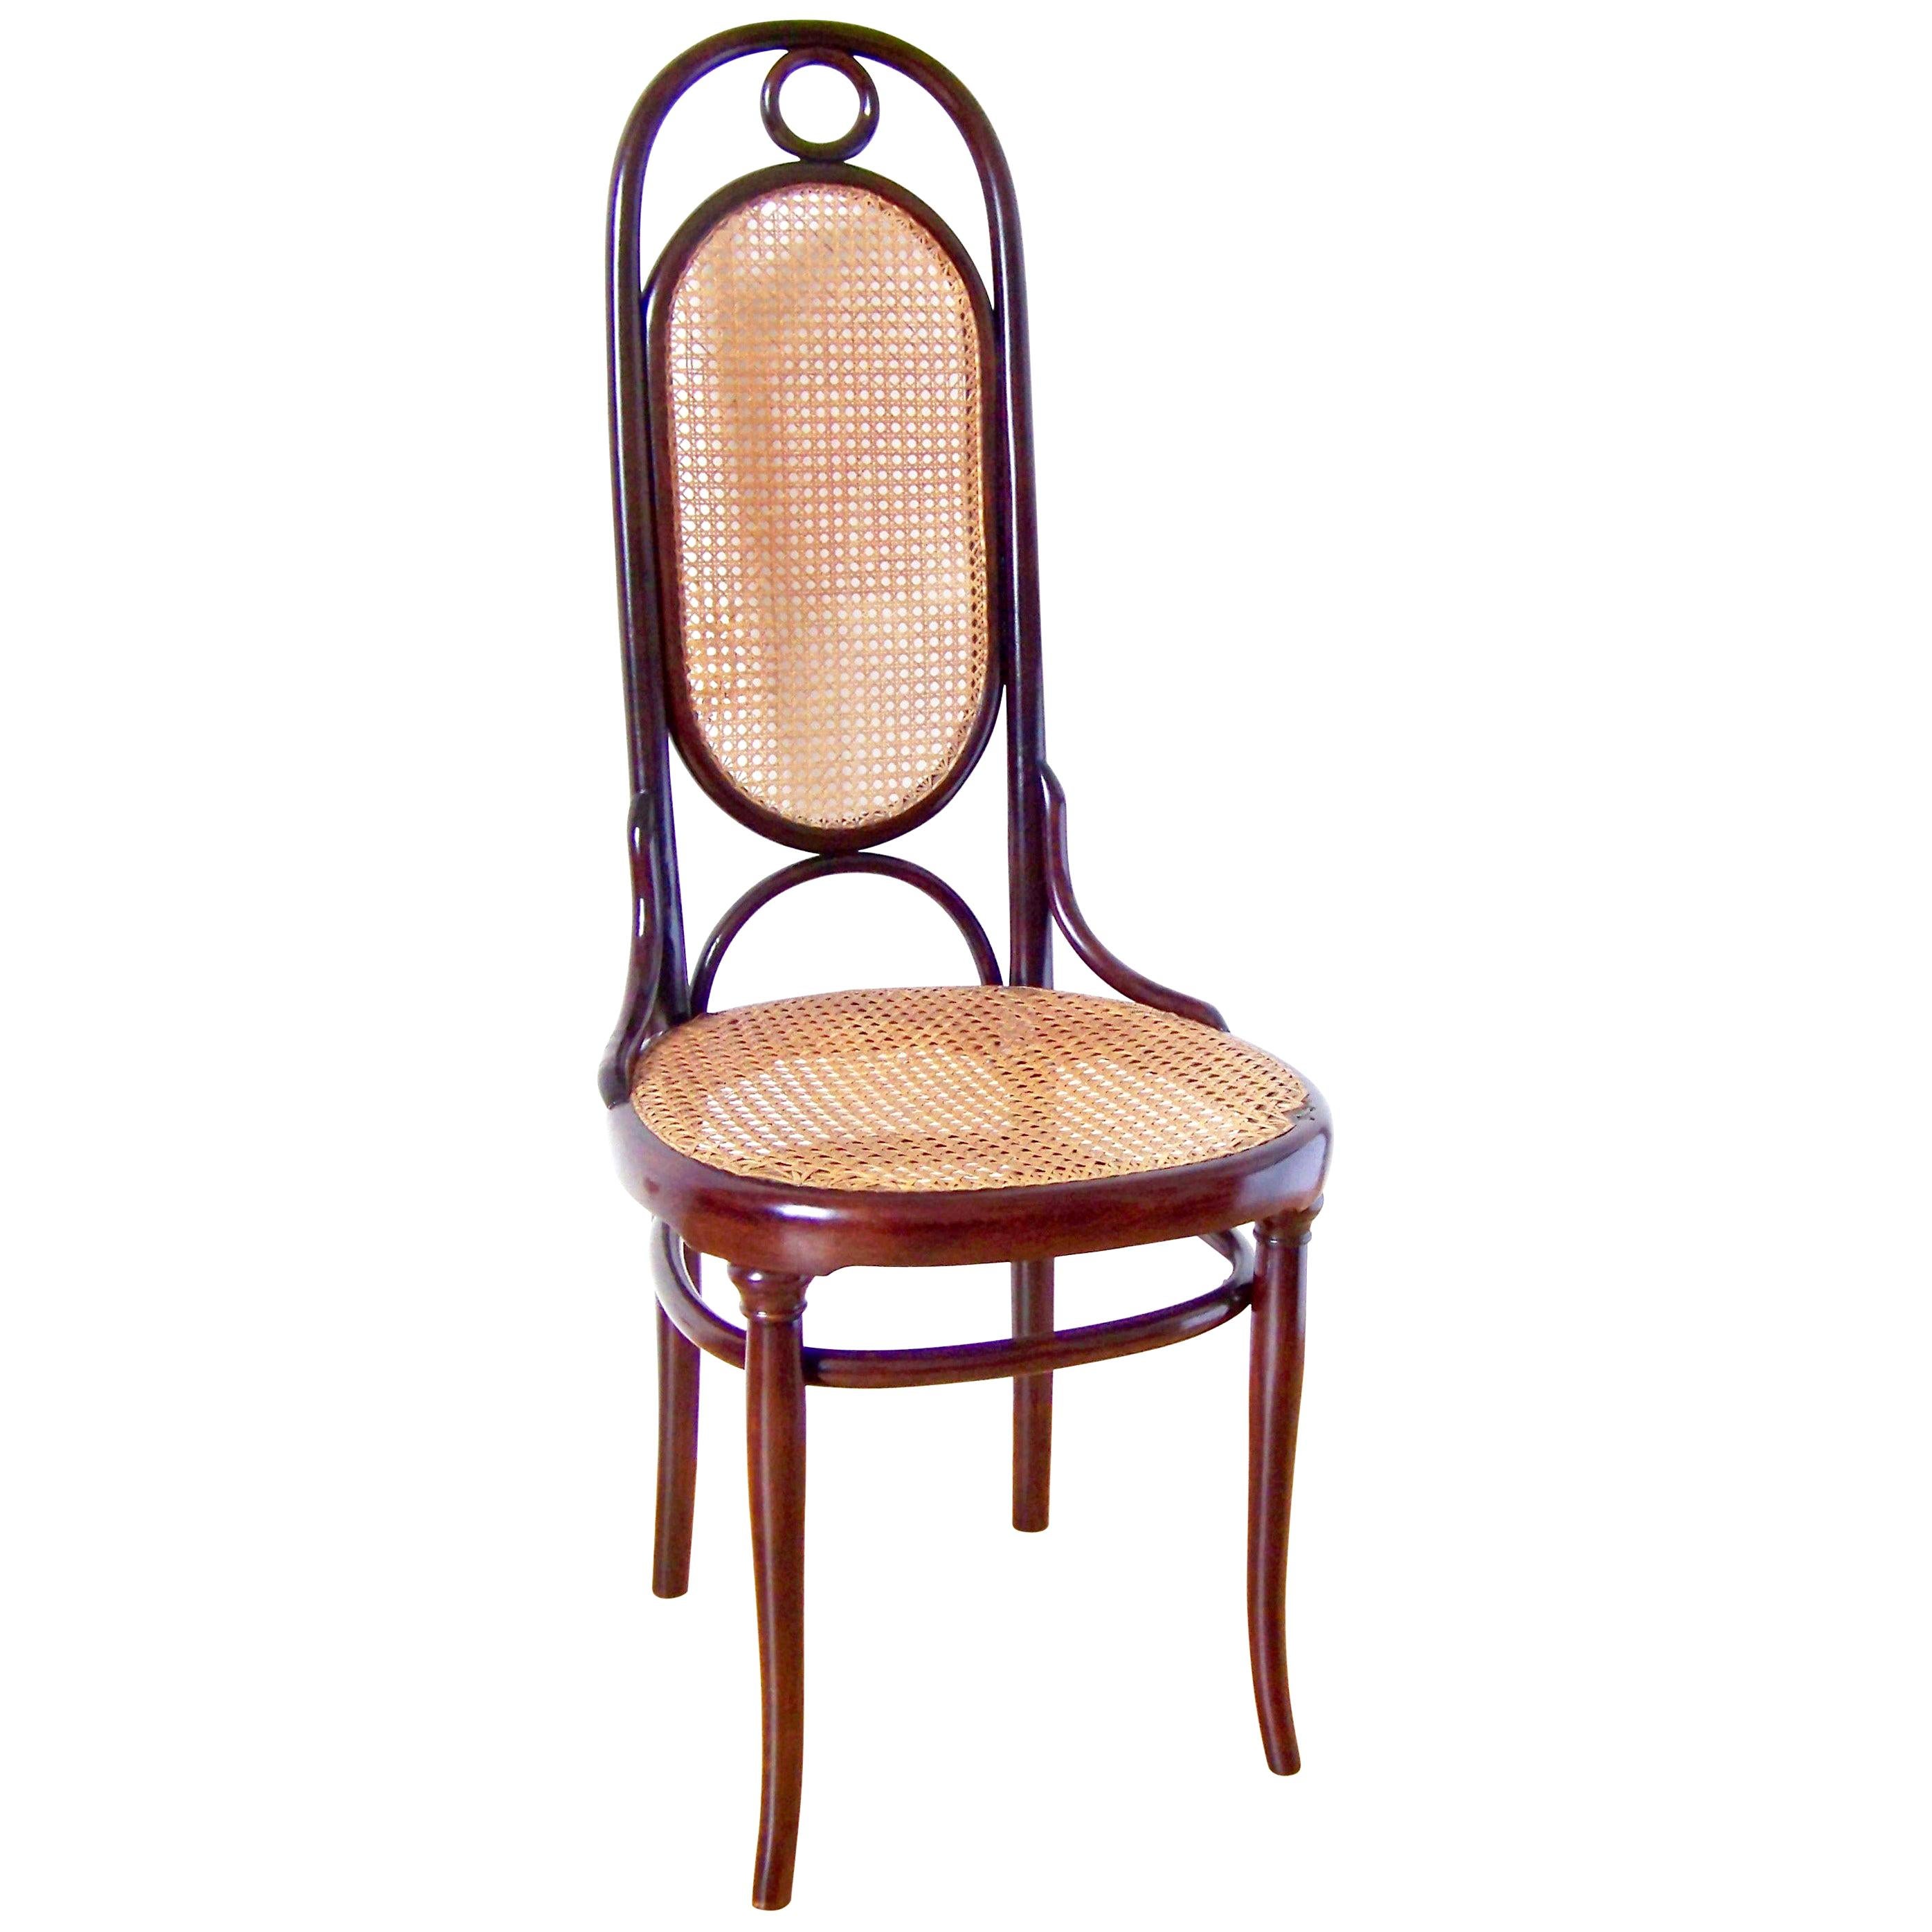 Chair Gebrüder Thonet Nr.17, circa 1887-1910